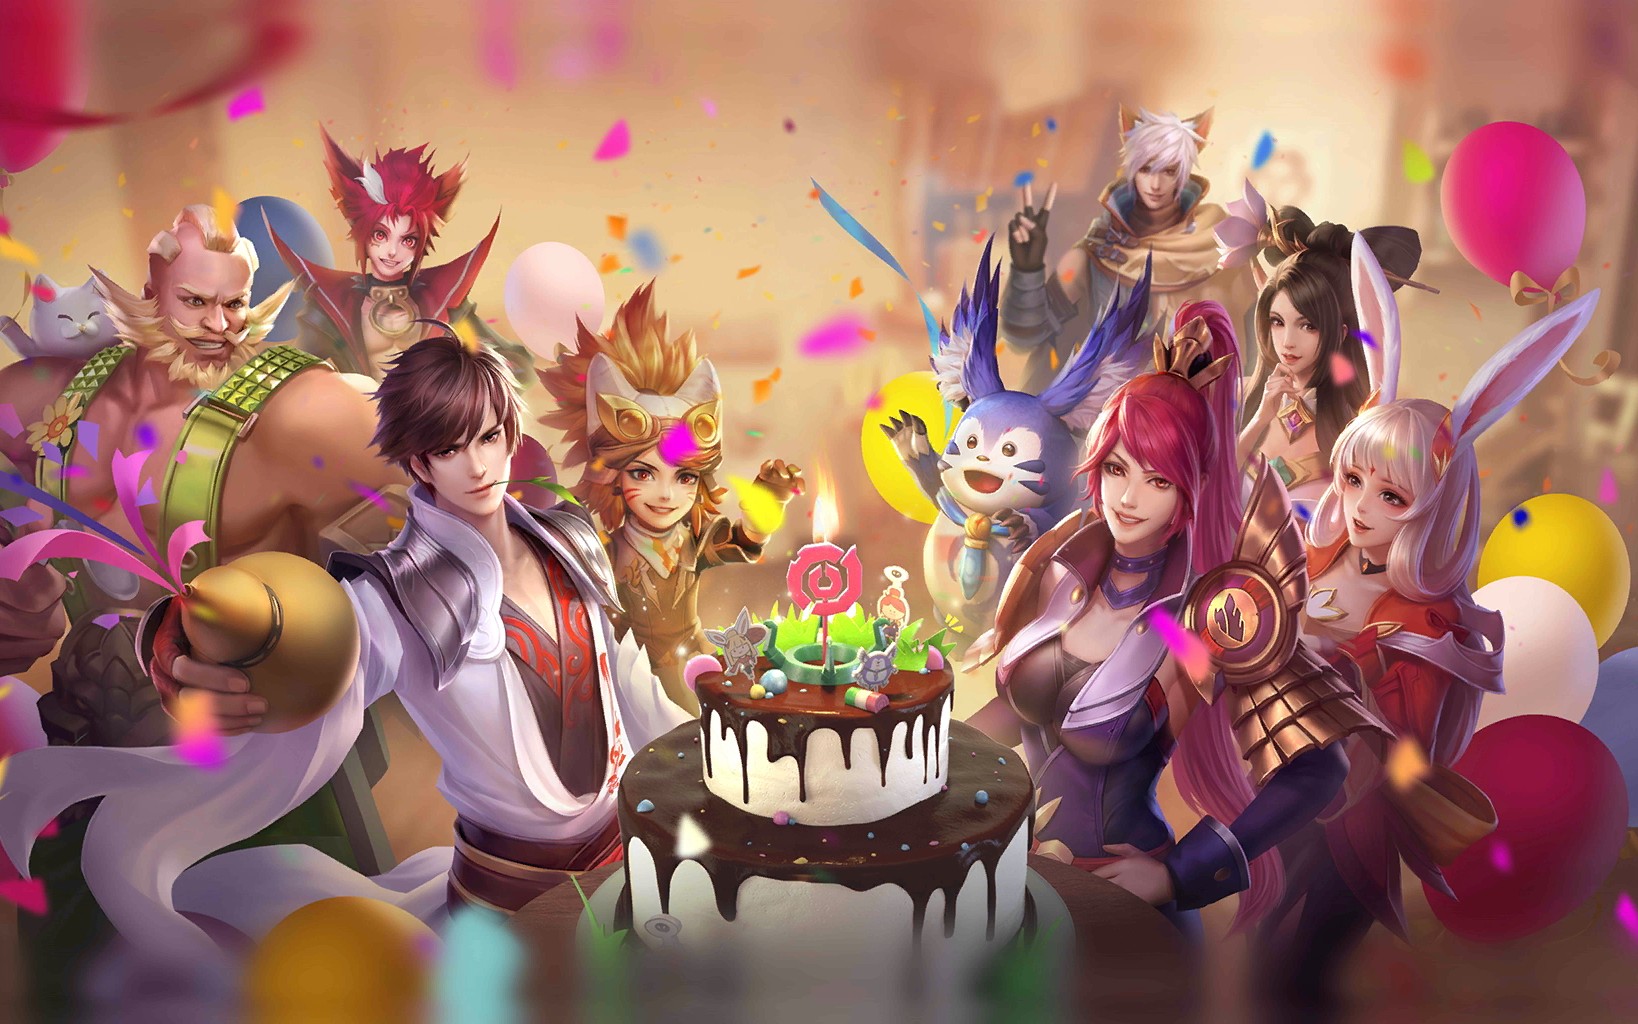 在王者荣耀中,最近游戏迎来了6周年的庆典活动,玩家们可以在游戏中